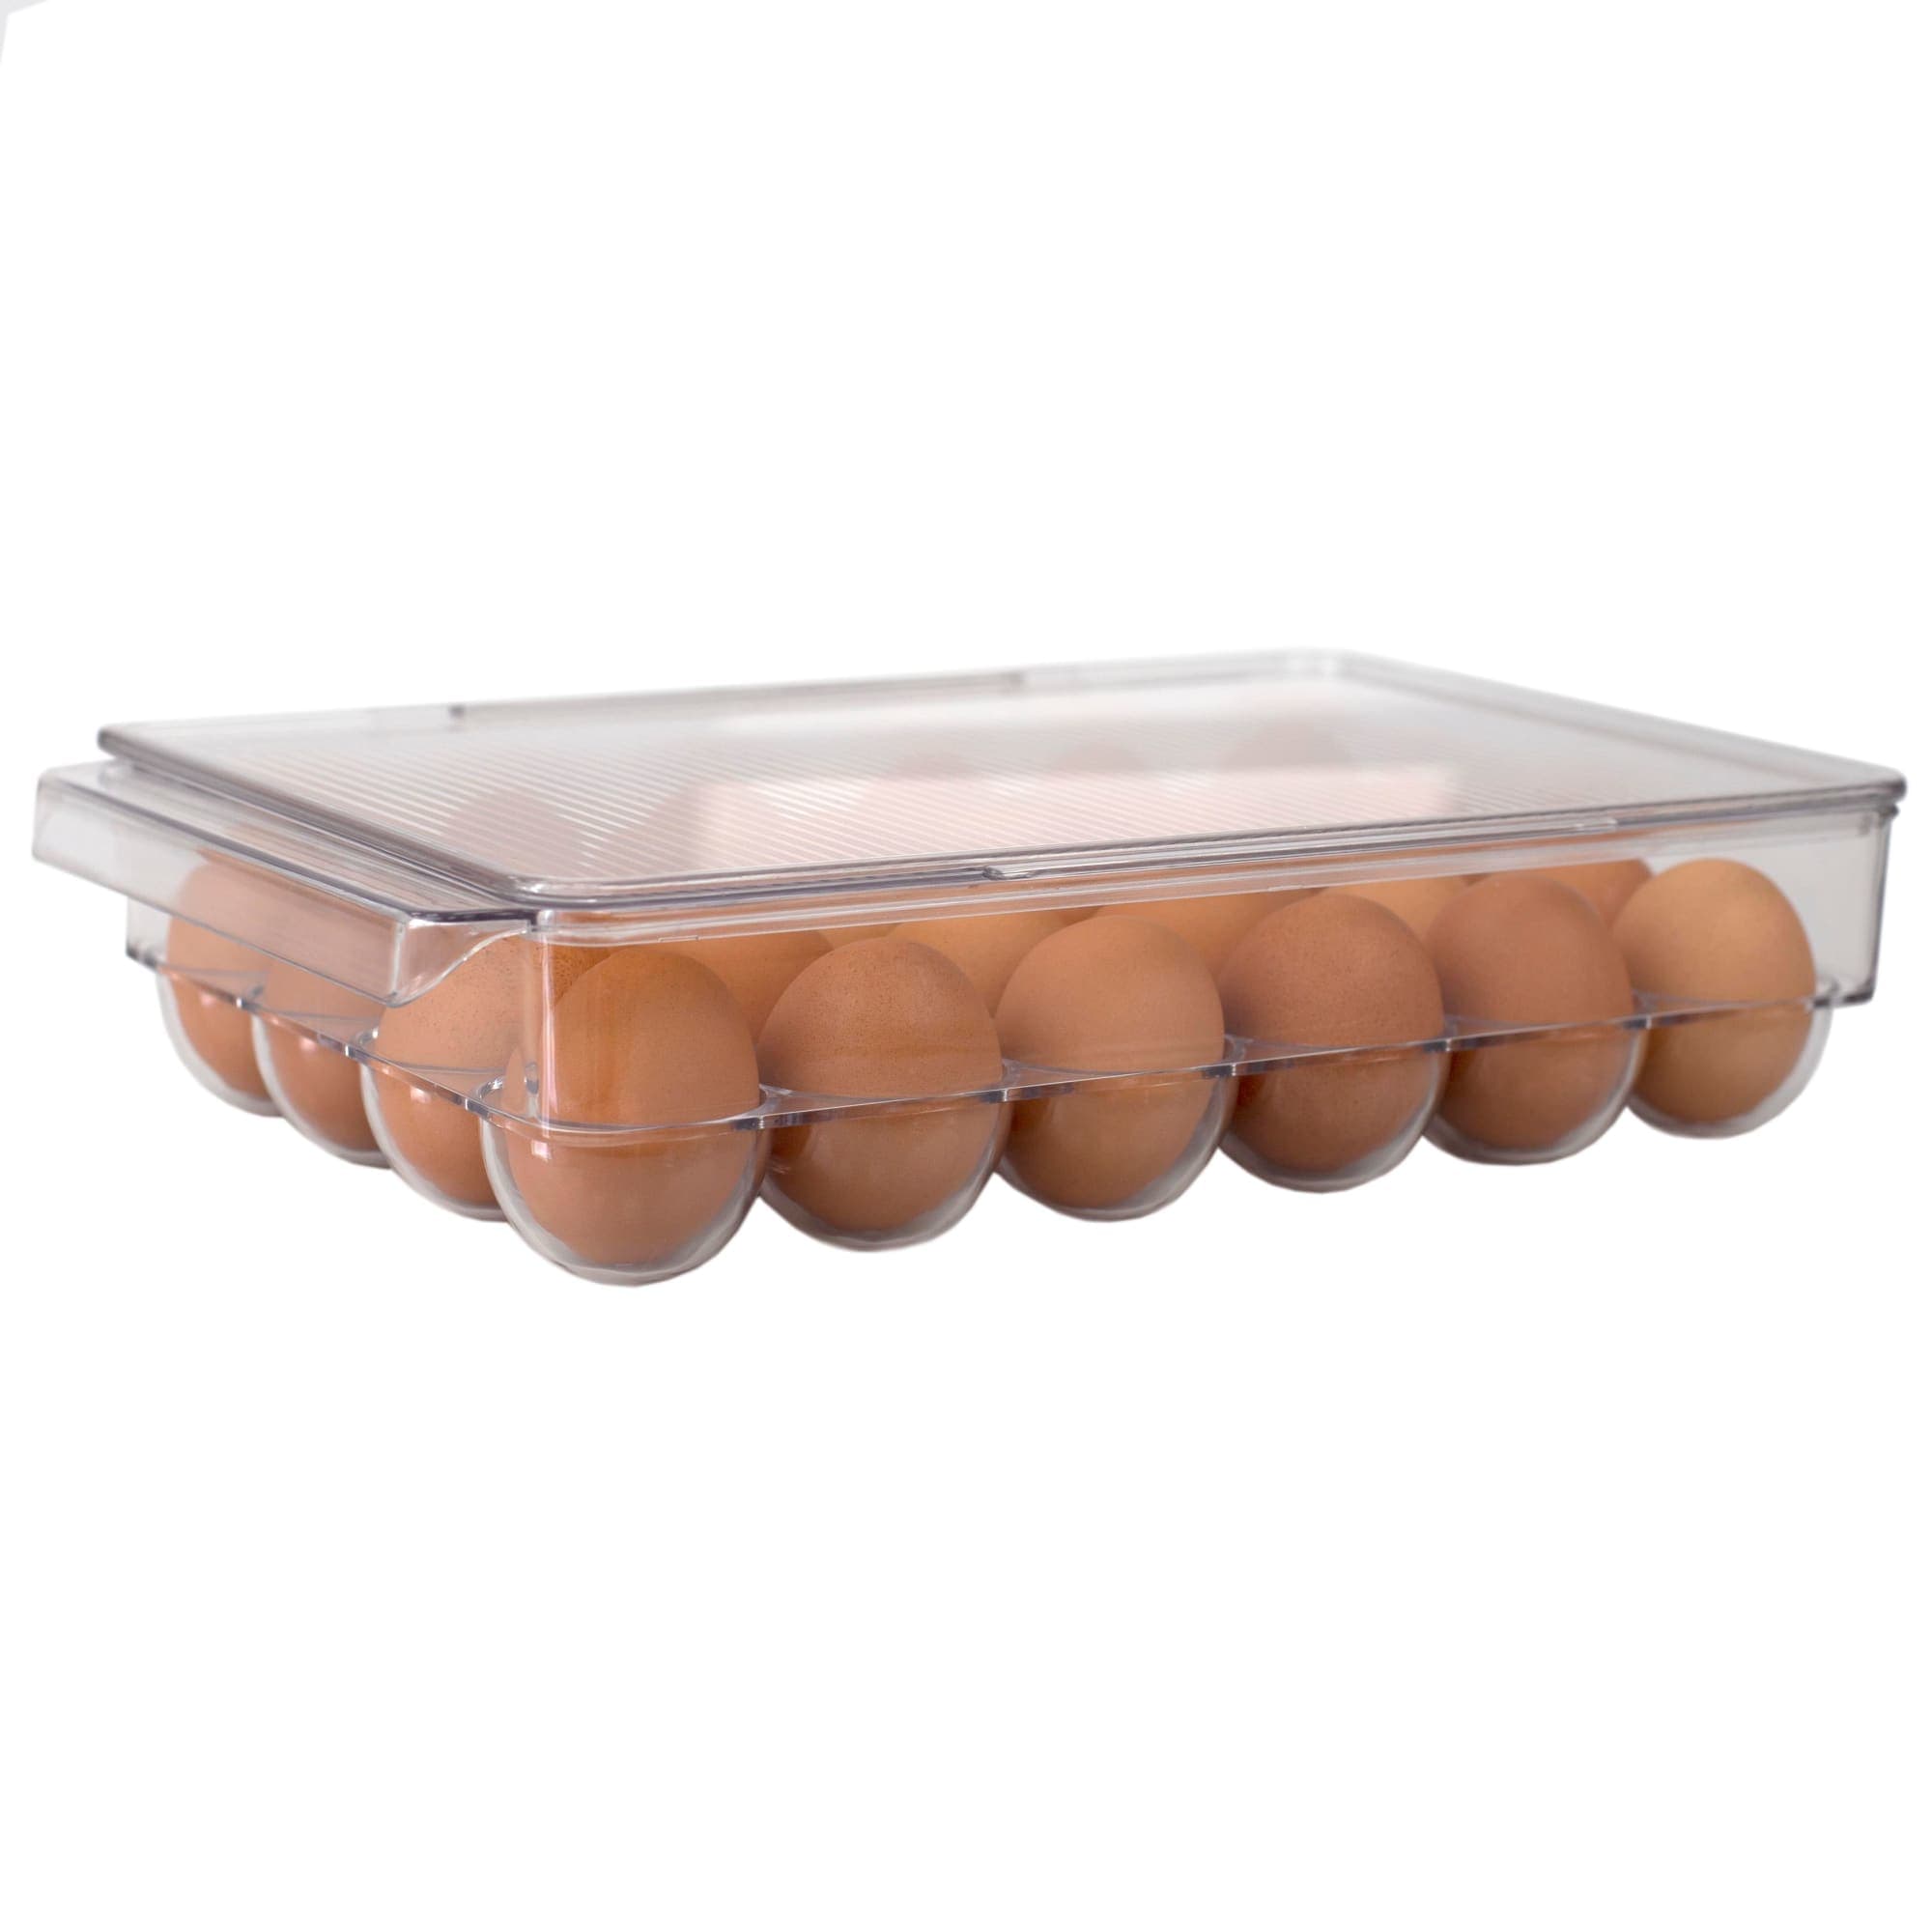 Buy Egg Holder for Fridge